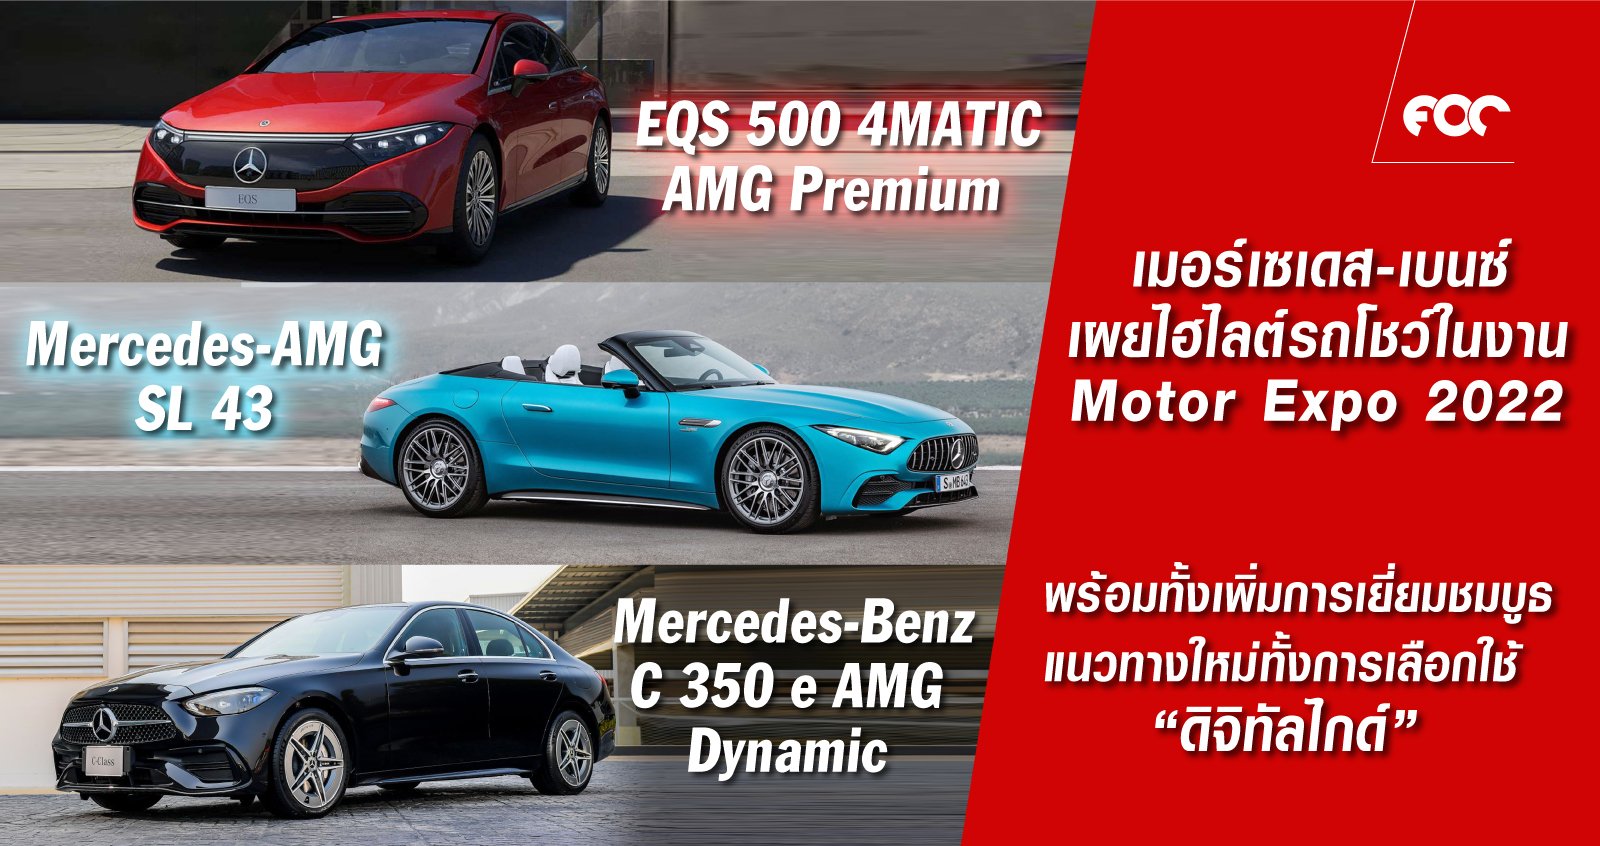 เบนซ์ประเทศไทย เผยทิศทางใหม่ในการสร้างสรรค์บูธสำหรับงานจัดแสดงรถยนต์  นำเสนอรถยนต์ไฮไลต์ในงาน นำโดย “Mercedes-EQ” และ “Mercedes-AMG” 